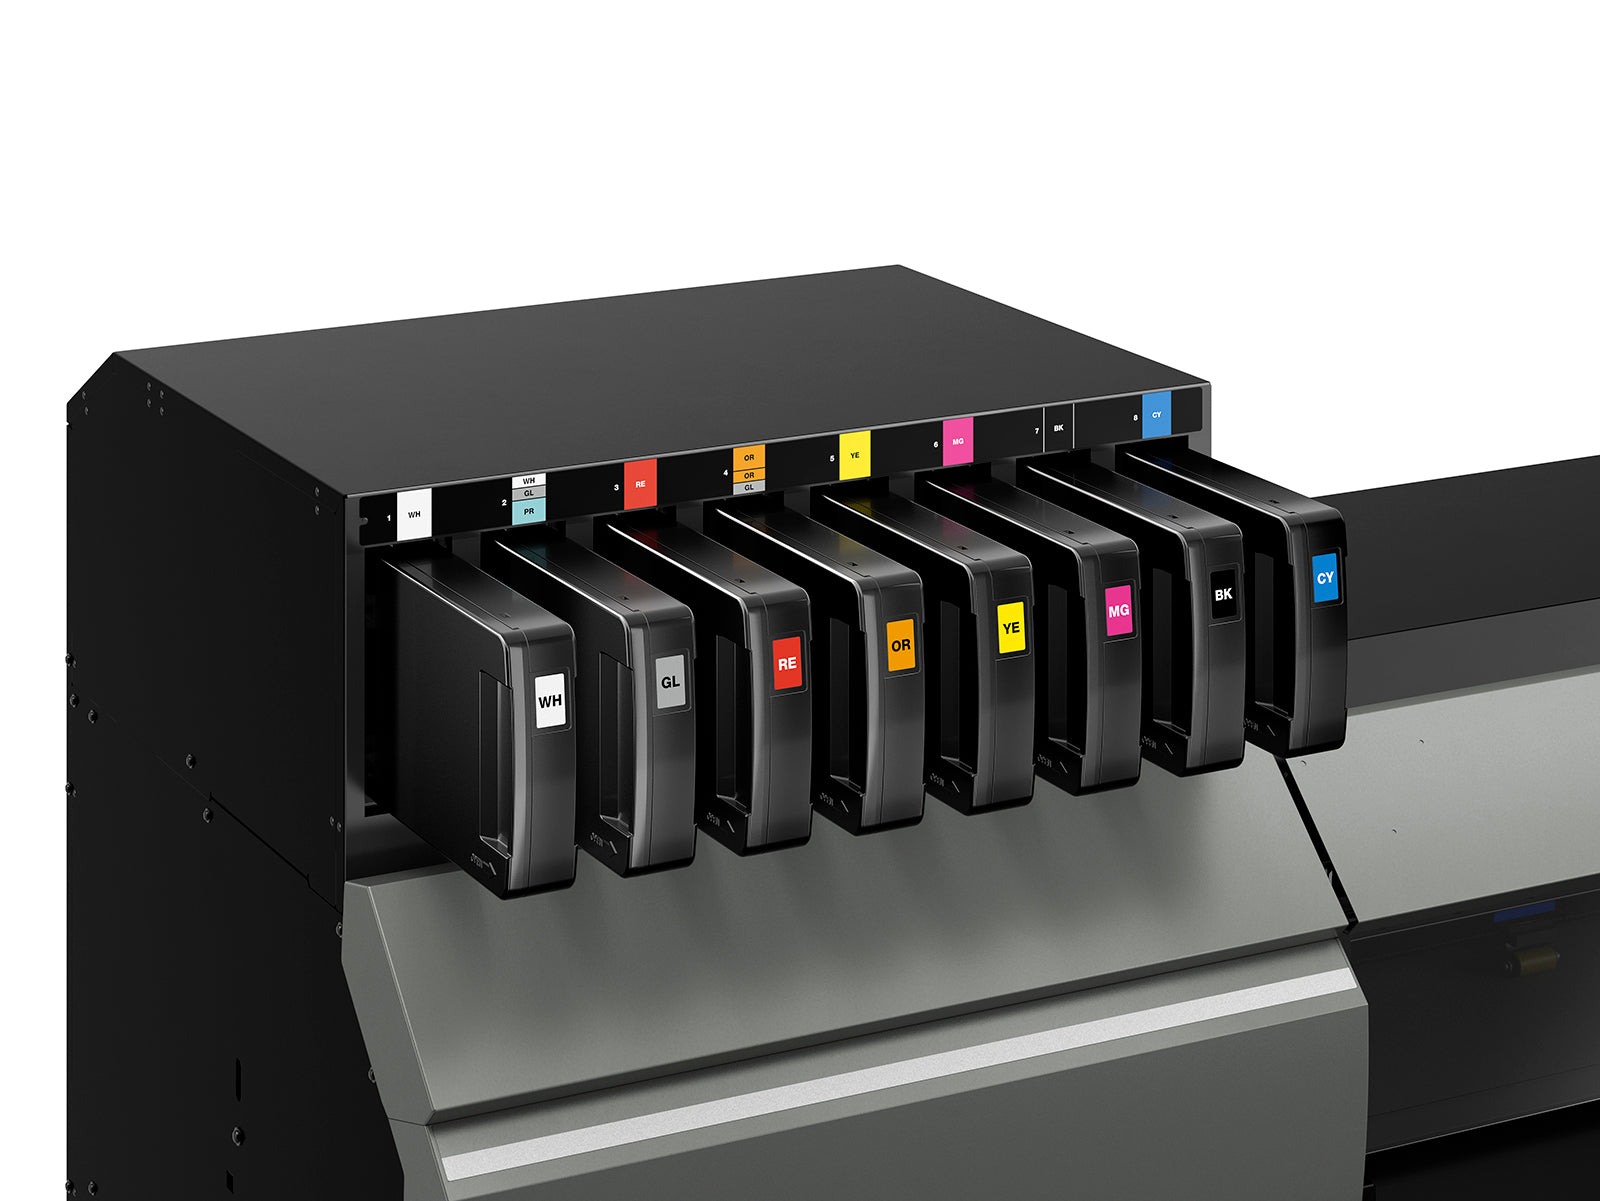 Roland TrueVIS LG-640 UV Printer/Cutter